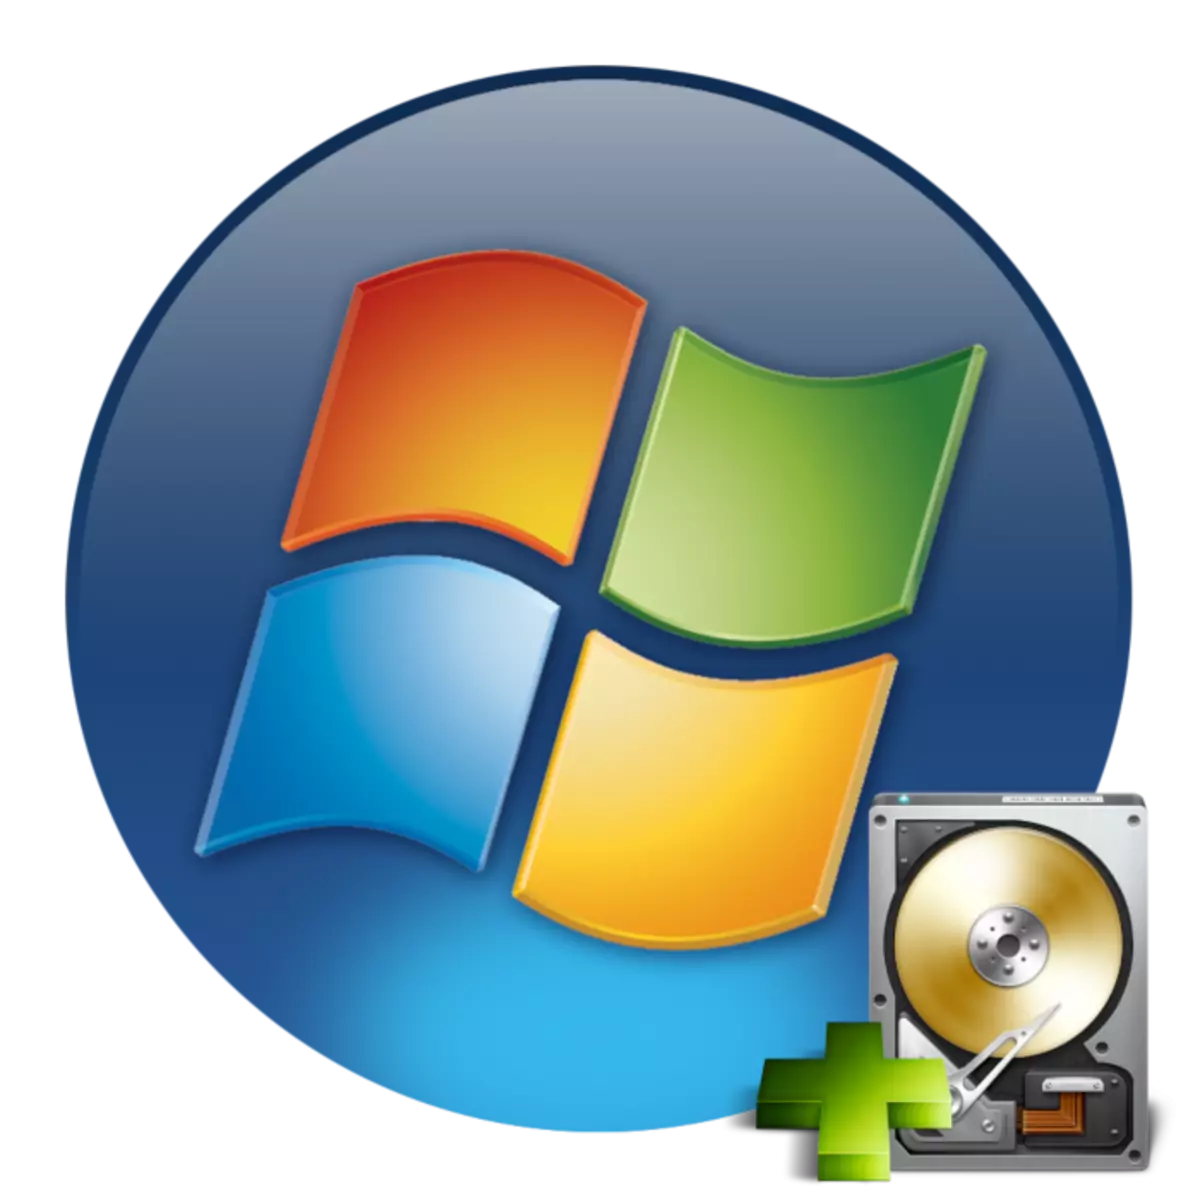 Yadda ake ƙara diski mai wuya a cikin Windows 7